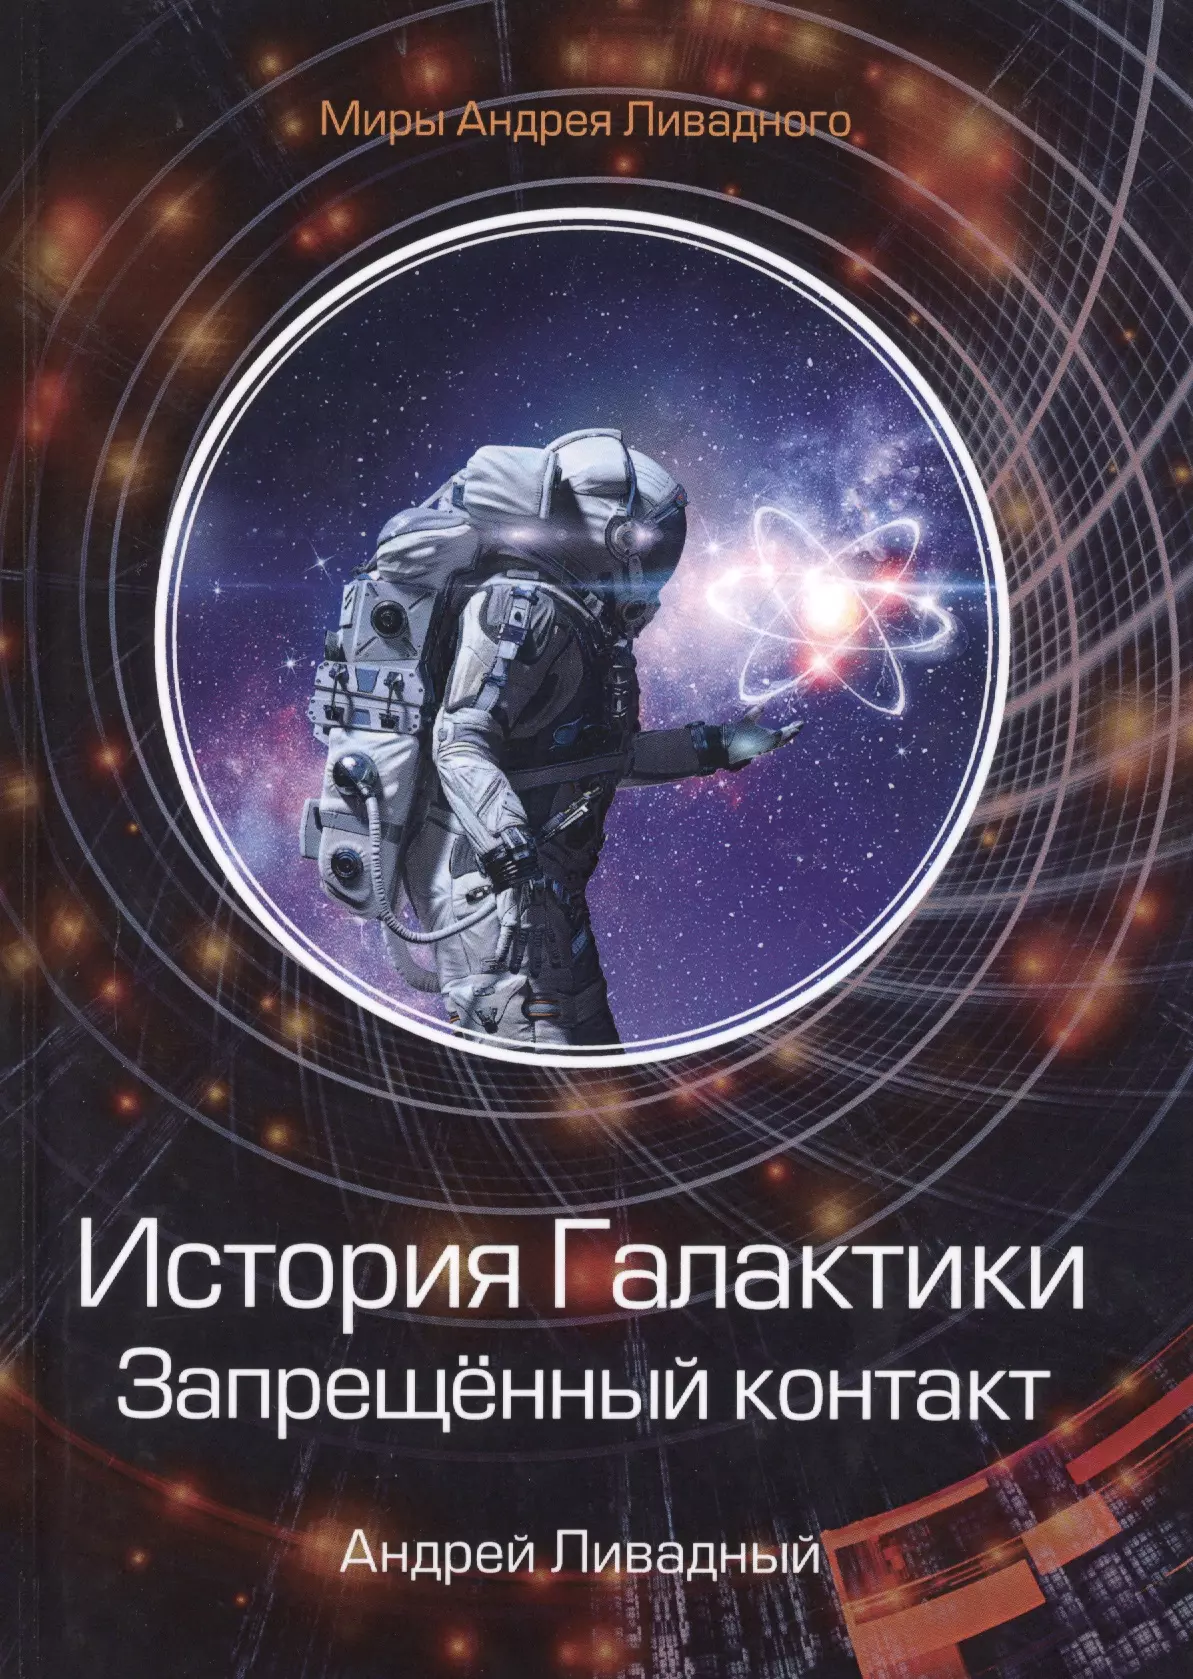 Ливадный Андрей Львович - История Галактики. Запрещенный контакт